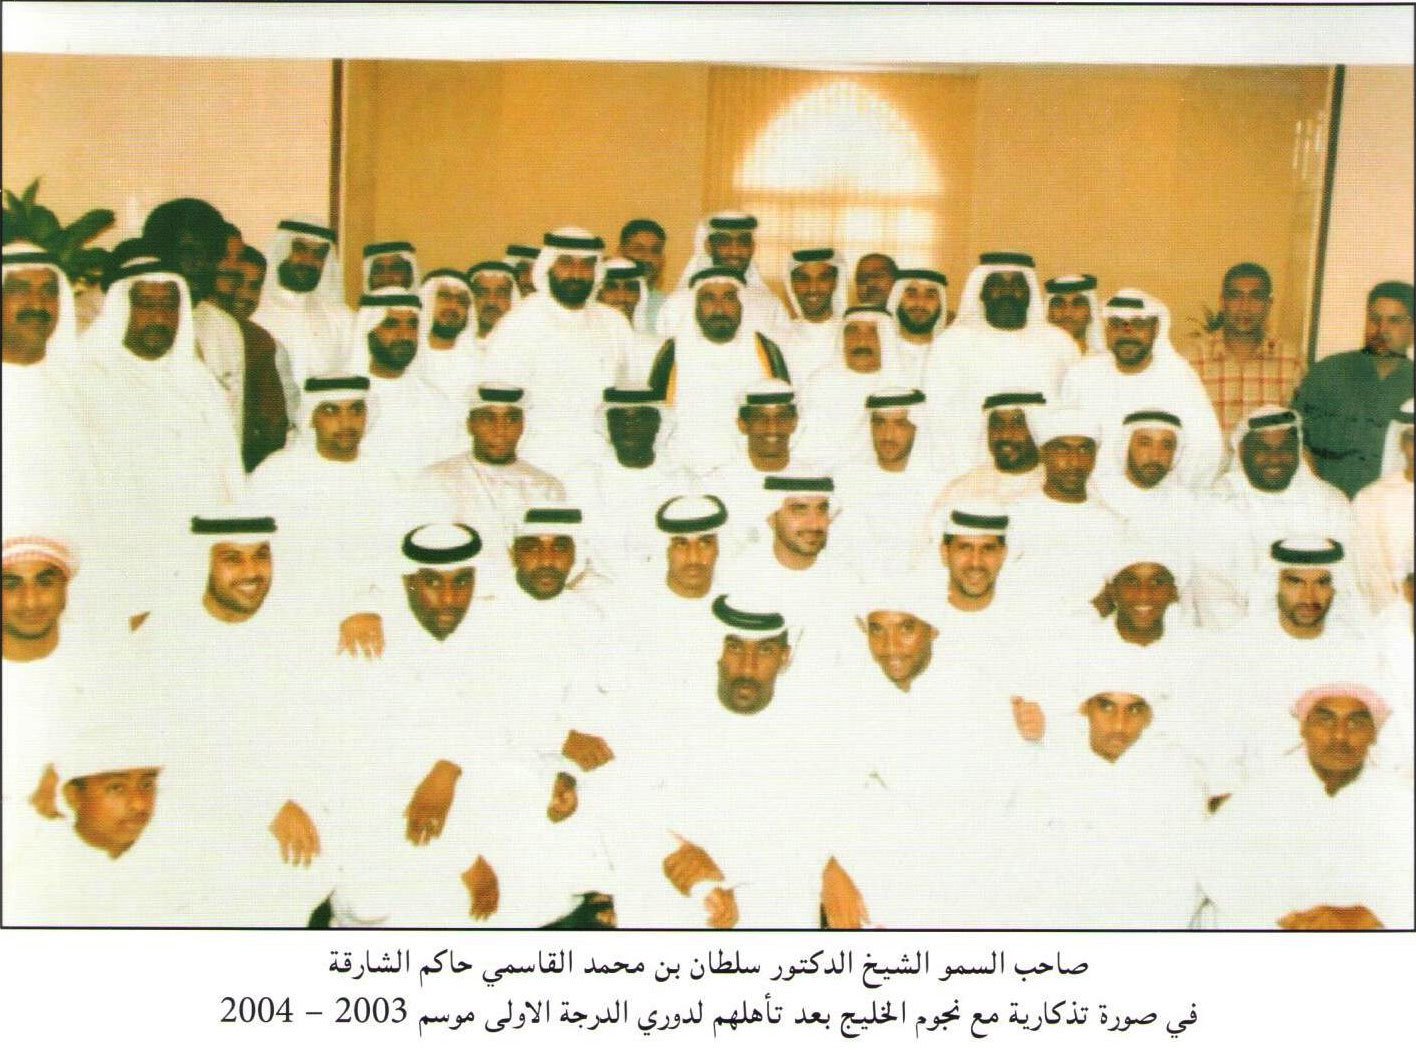 فريق نادي الخليج لكرة القدم 2003-2004 في استضافة صاحب السمو الشيخ سلطان بن محمد القاسمي